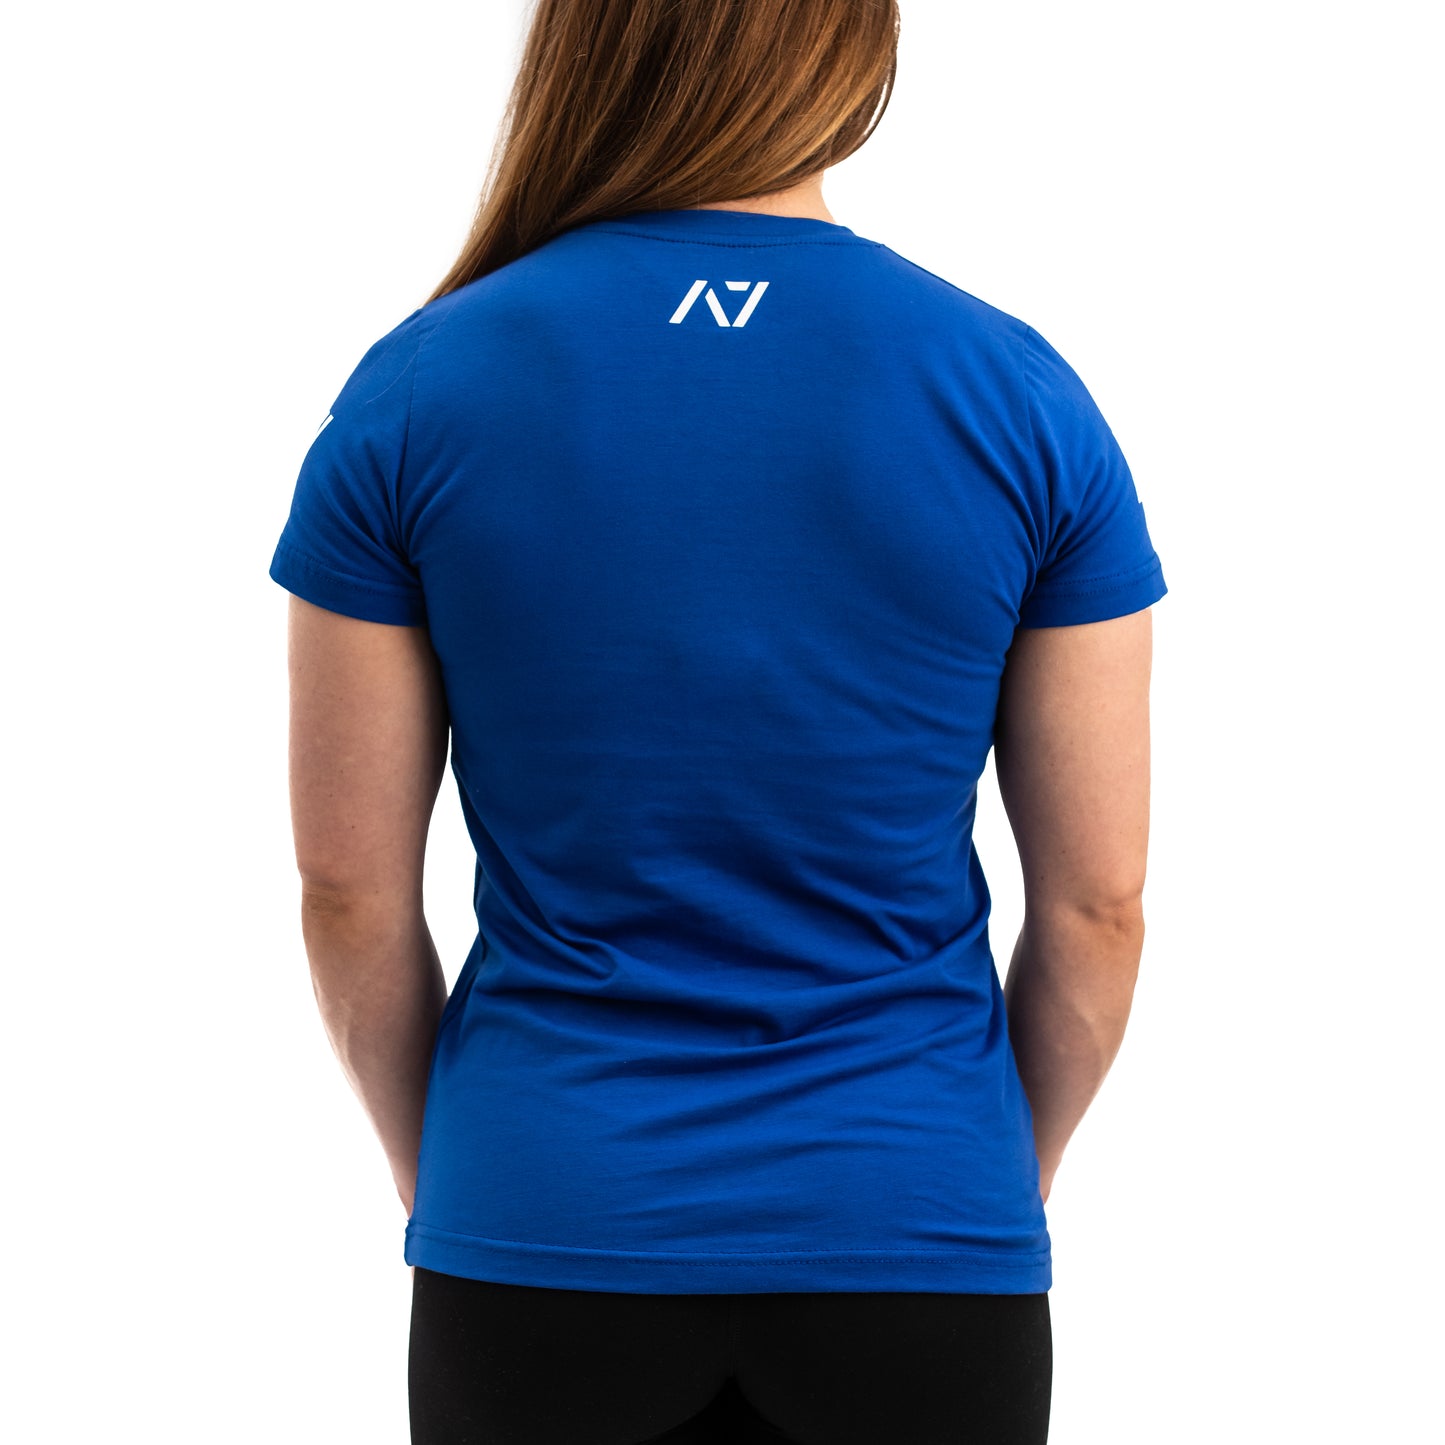 
                  
                    Demand Greatness IPF Approved Logo Women's Meet Shirt - Blue
                  
                